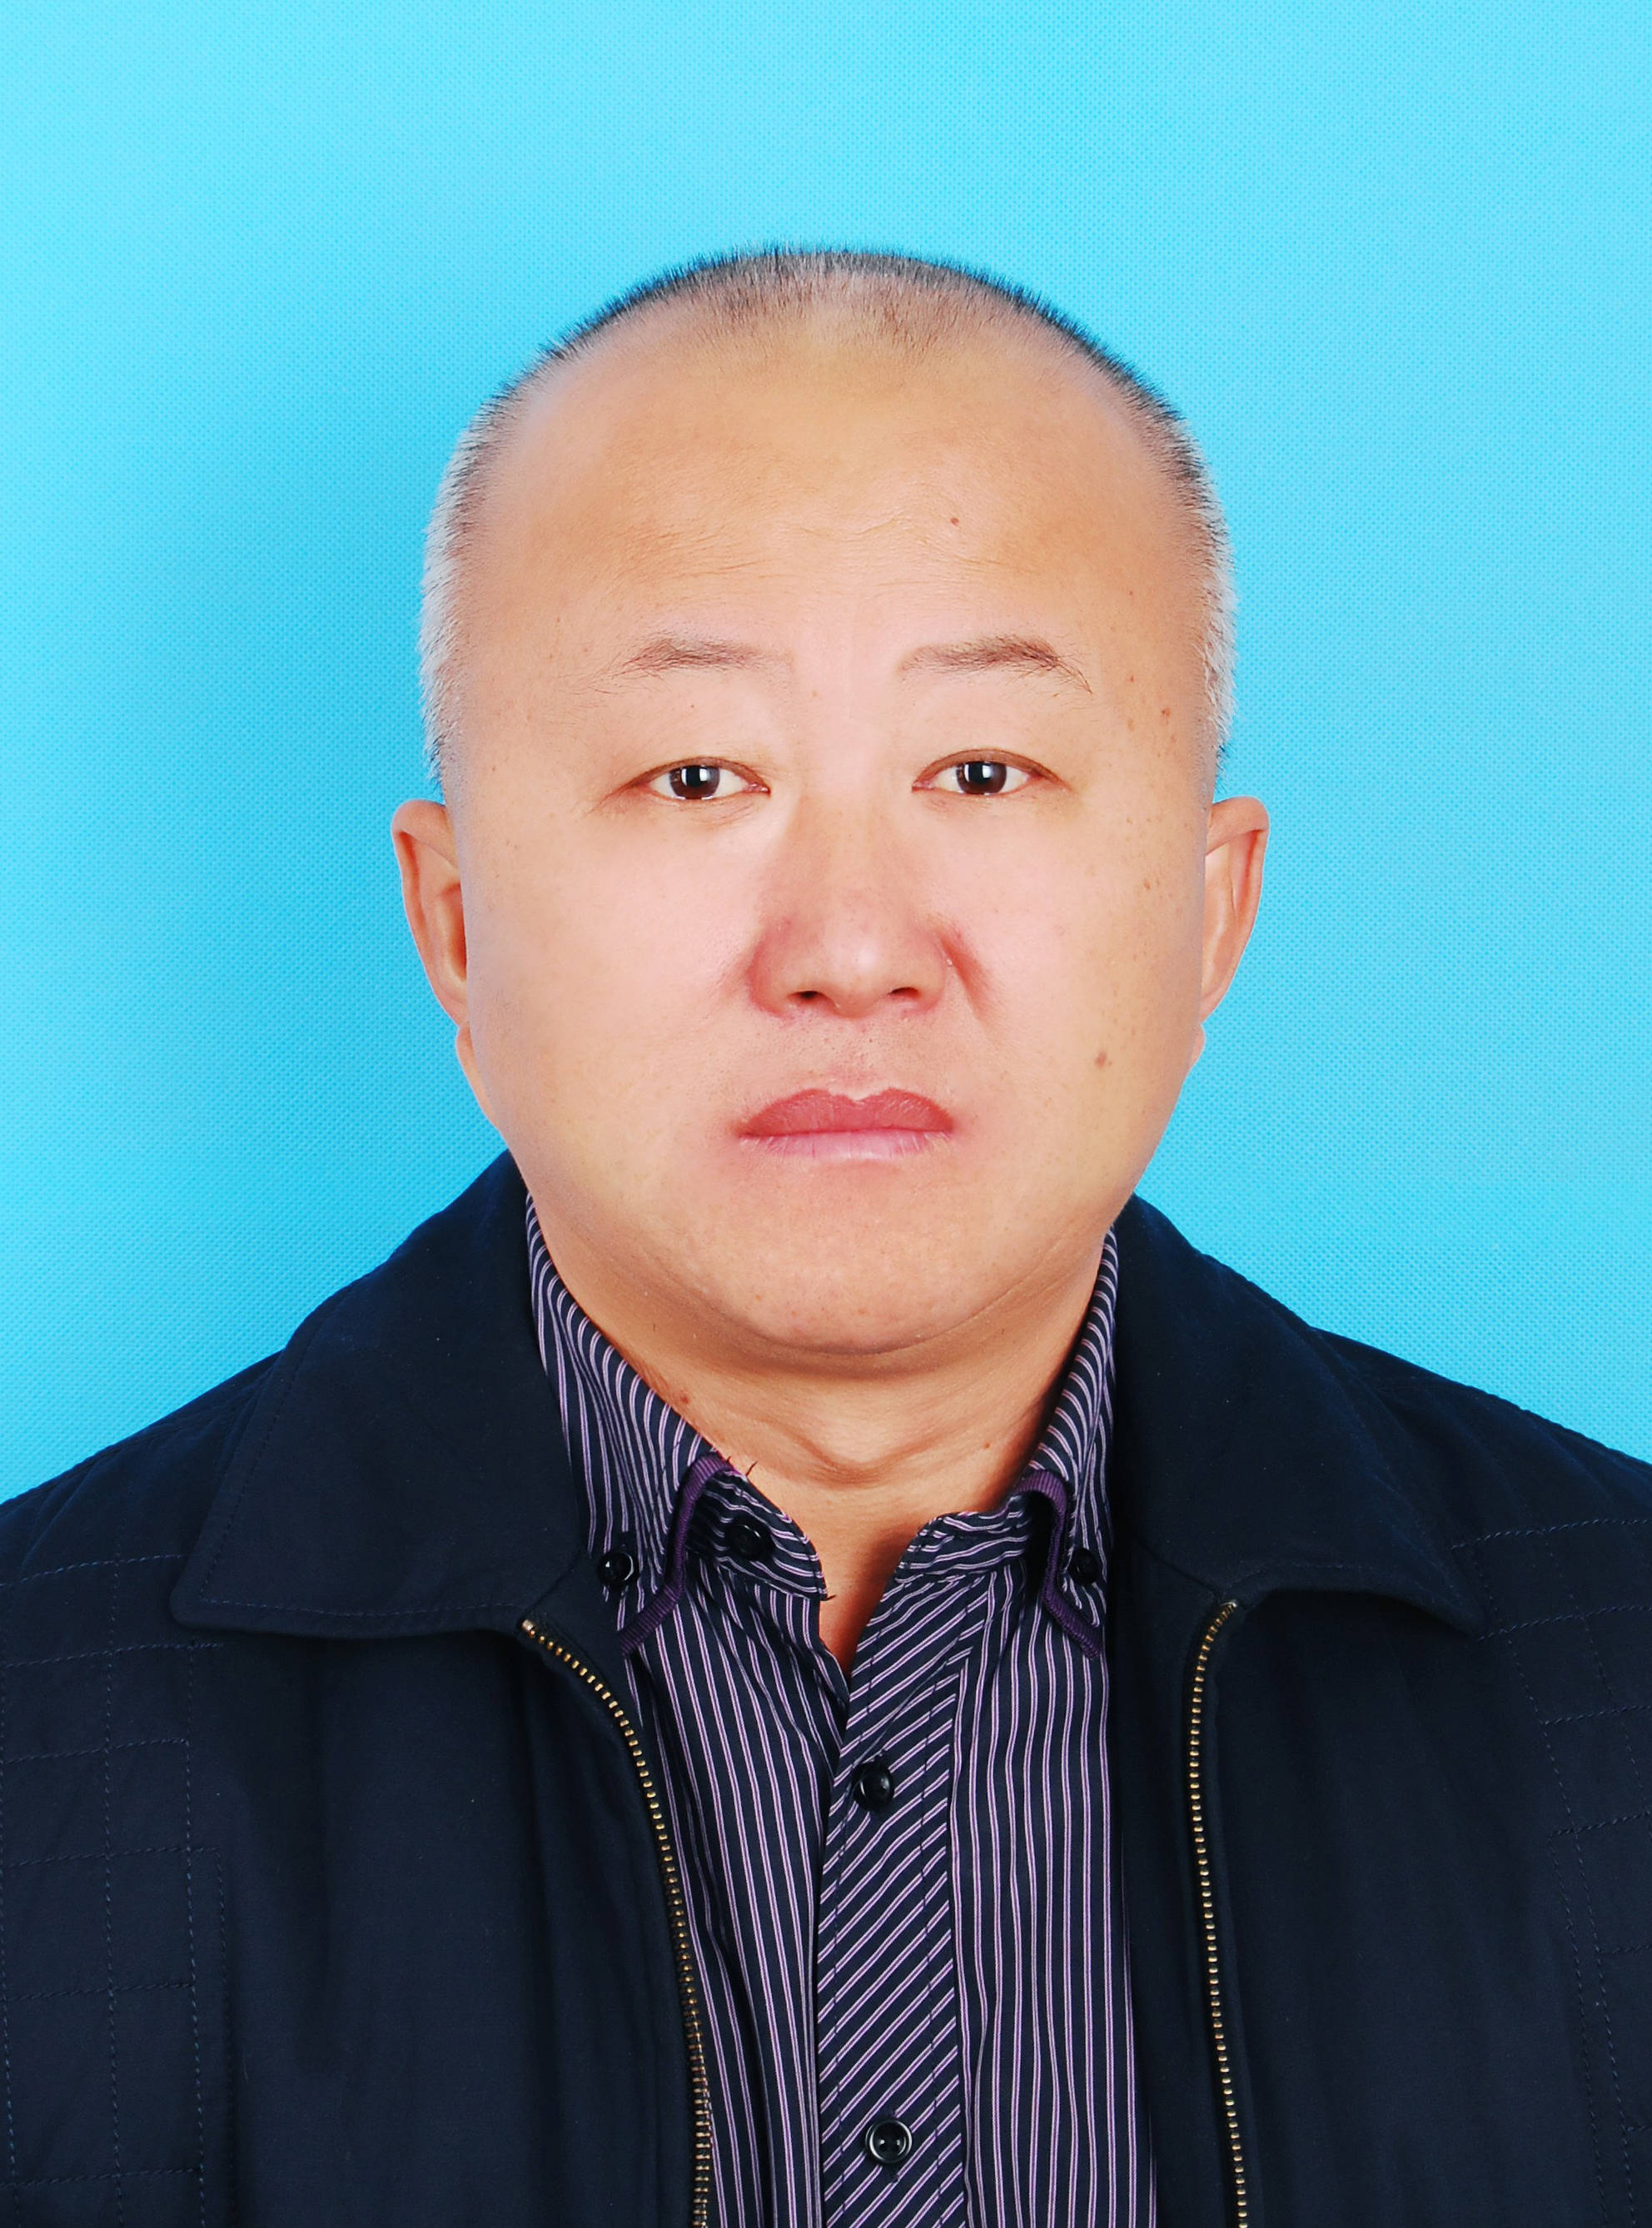 张勇自2006年起,在普兰店唐房烈士陵园工作,15年来,他兢兢业业做好